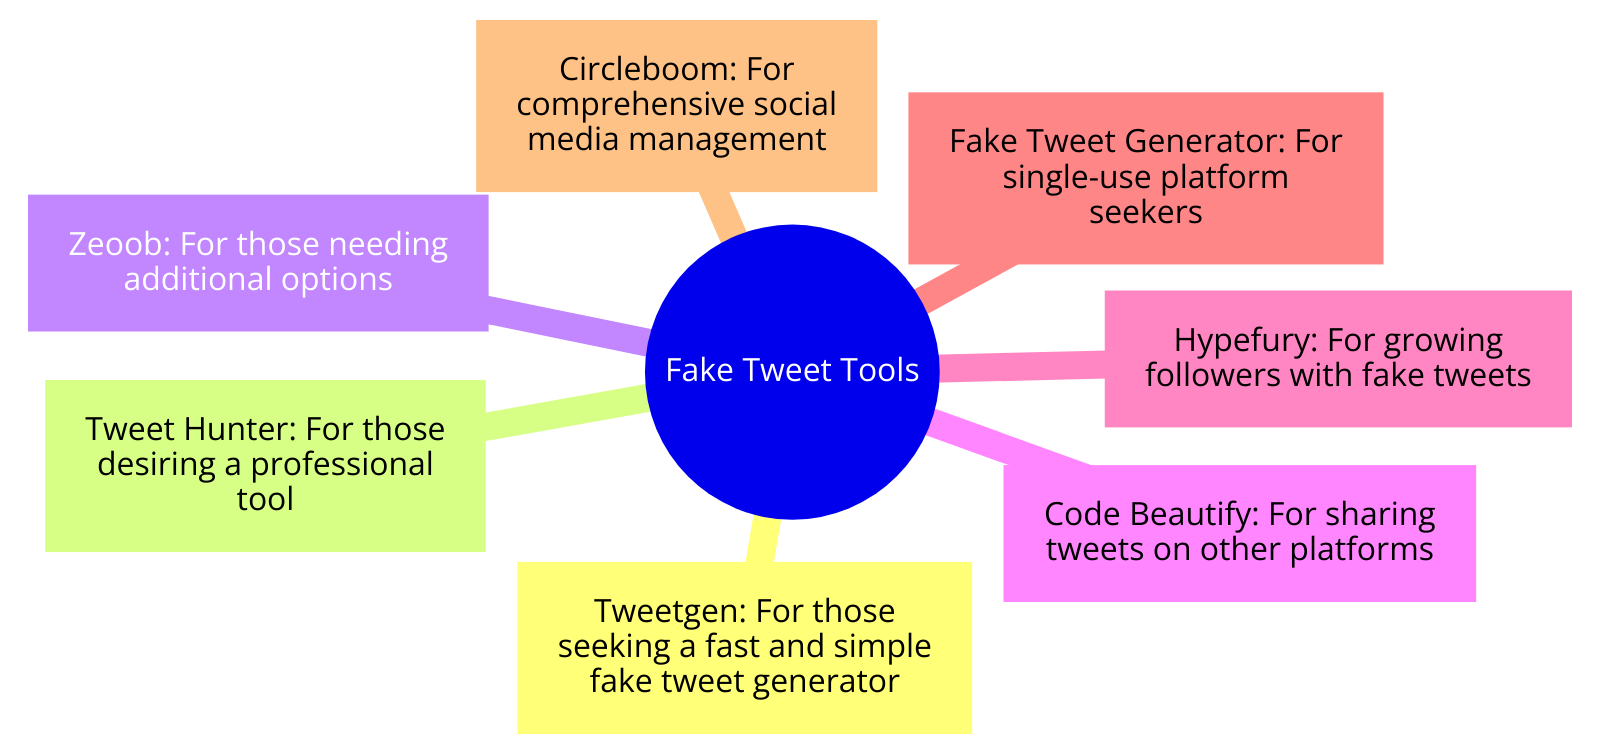 Fake Tweet Tools